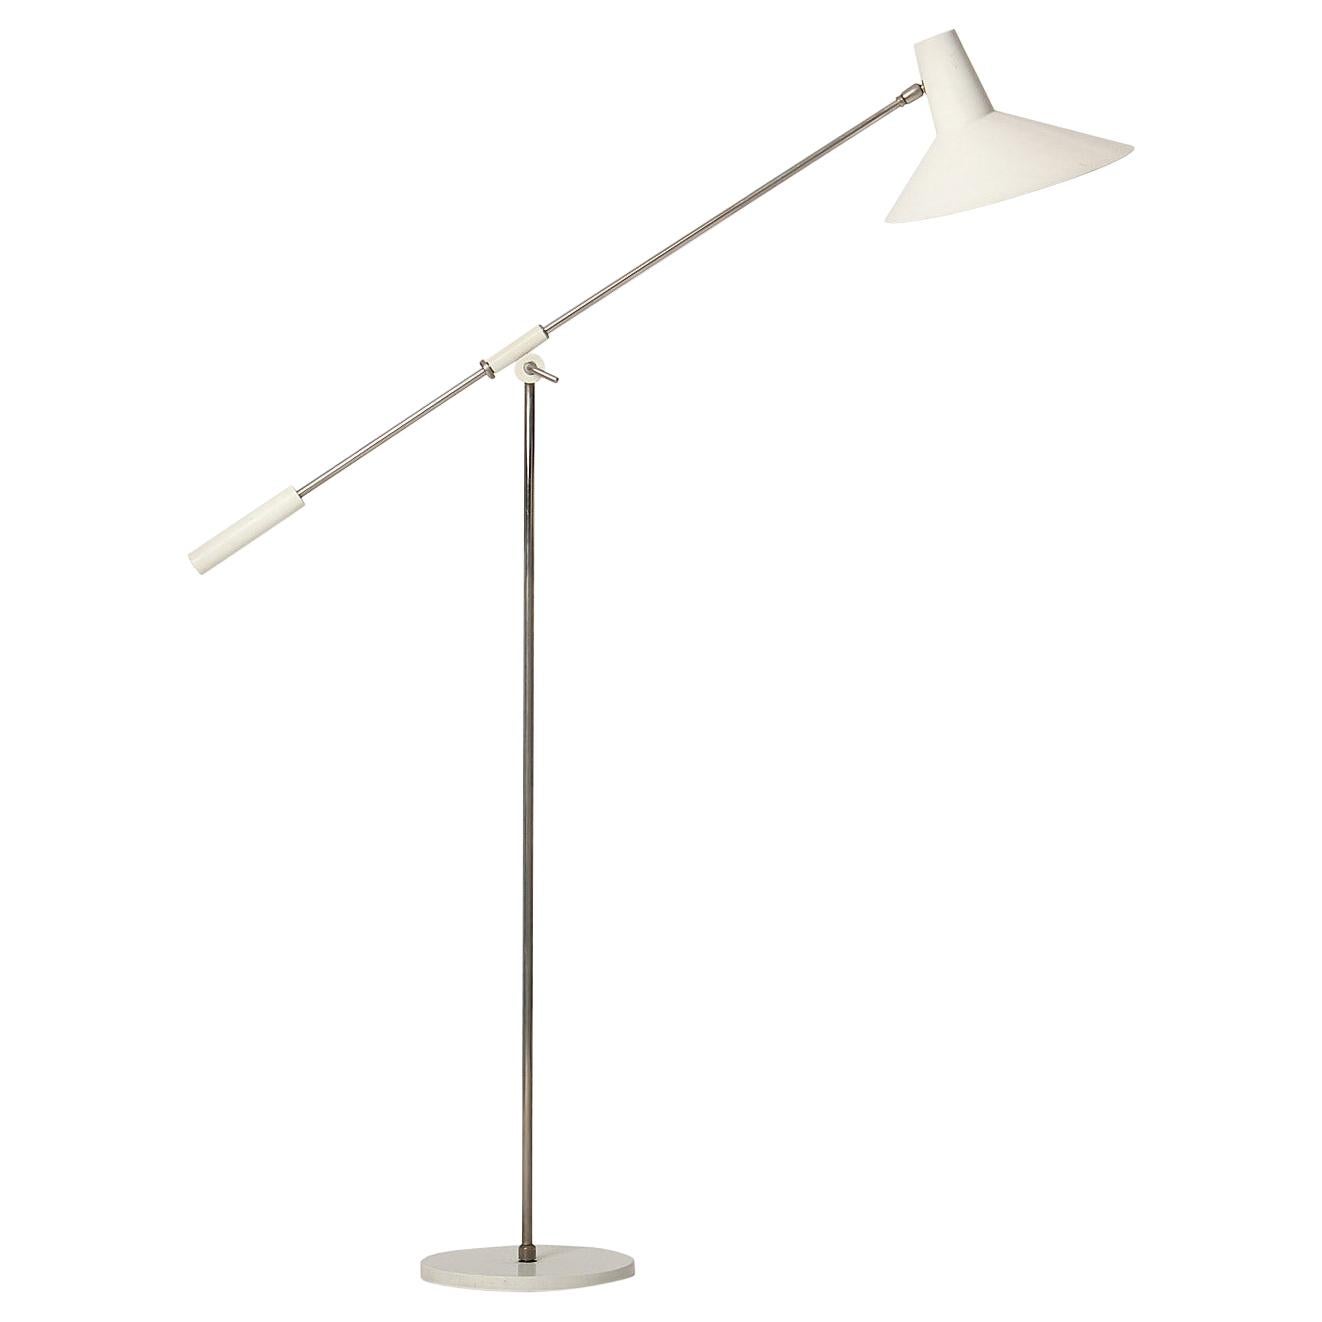 Italian Modernist Floor Lamp by Stilnovo For Sale